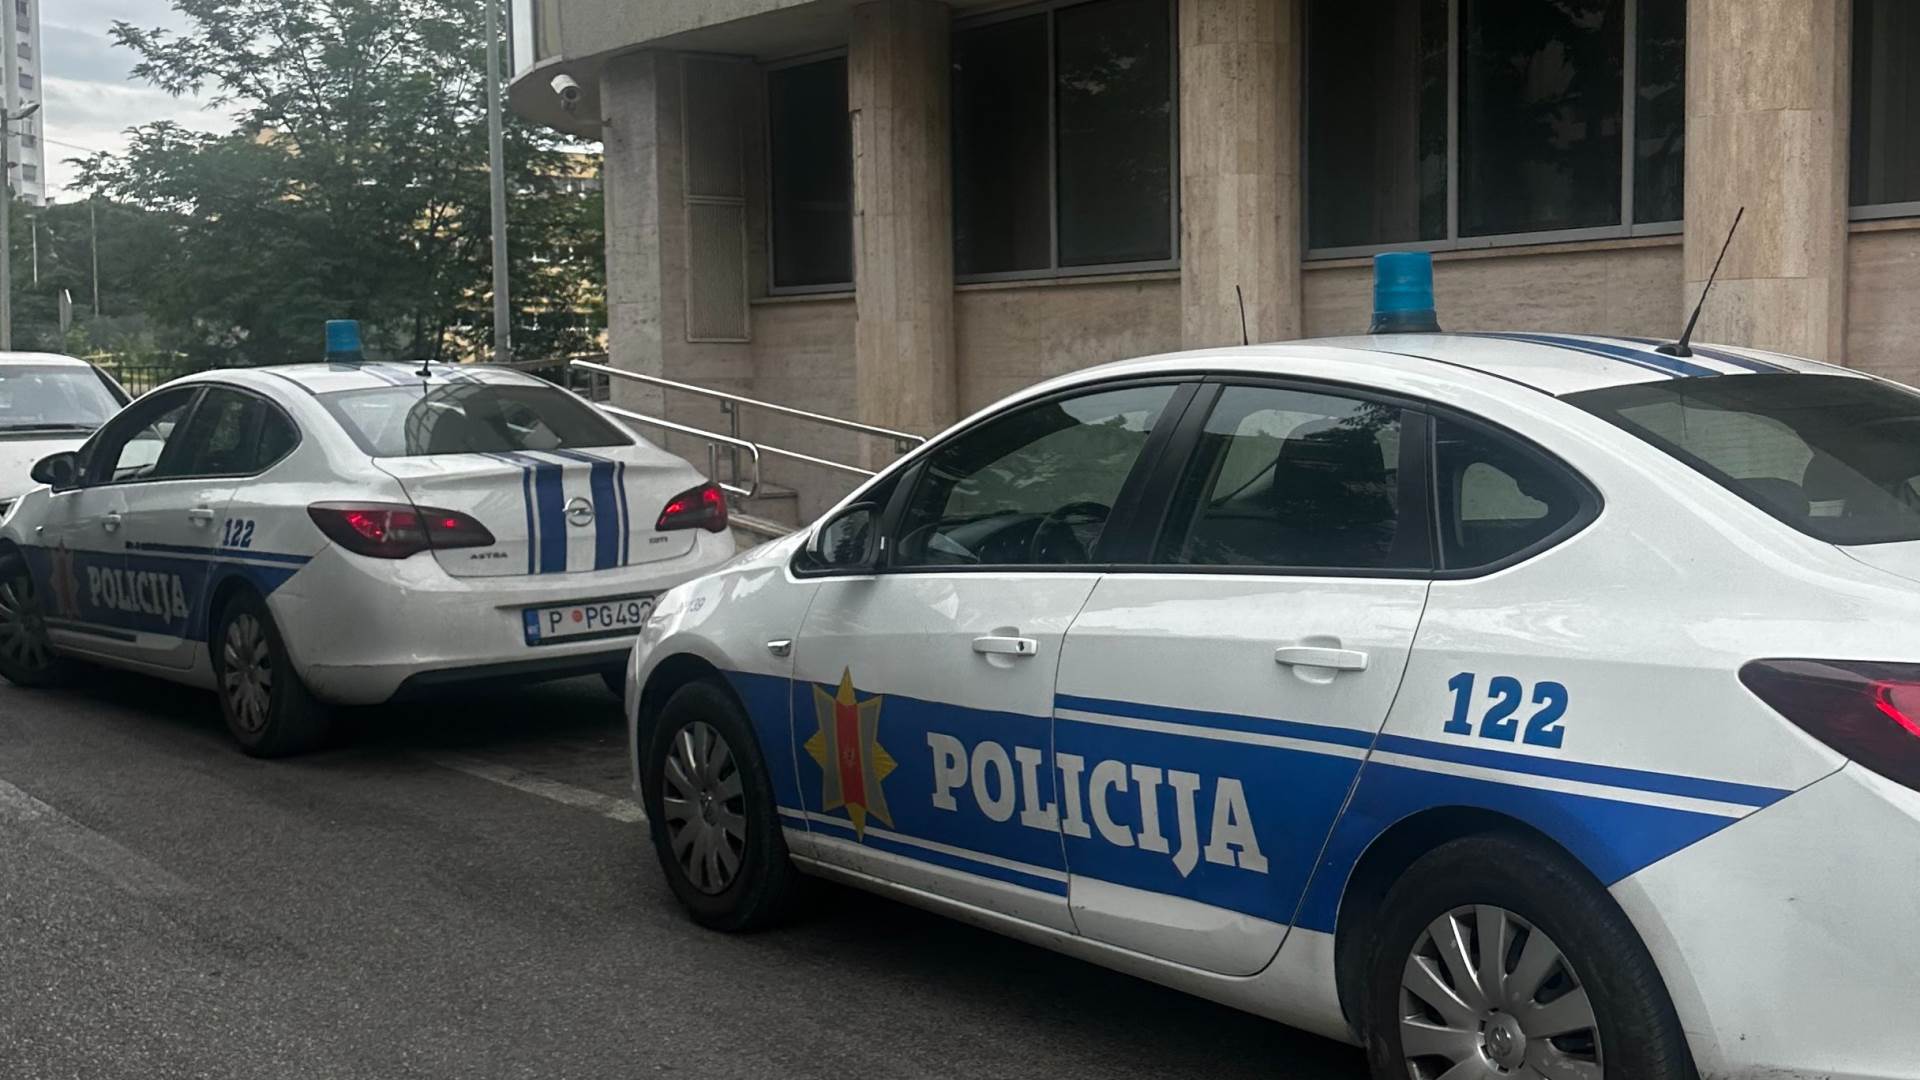  Dvojica Bjelopoljaca osumnjičeni za razbojništvo u Budvi predali se policiji  